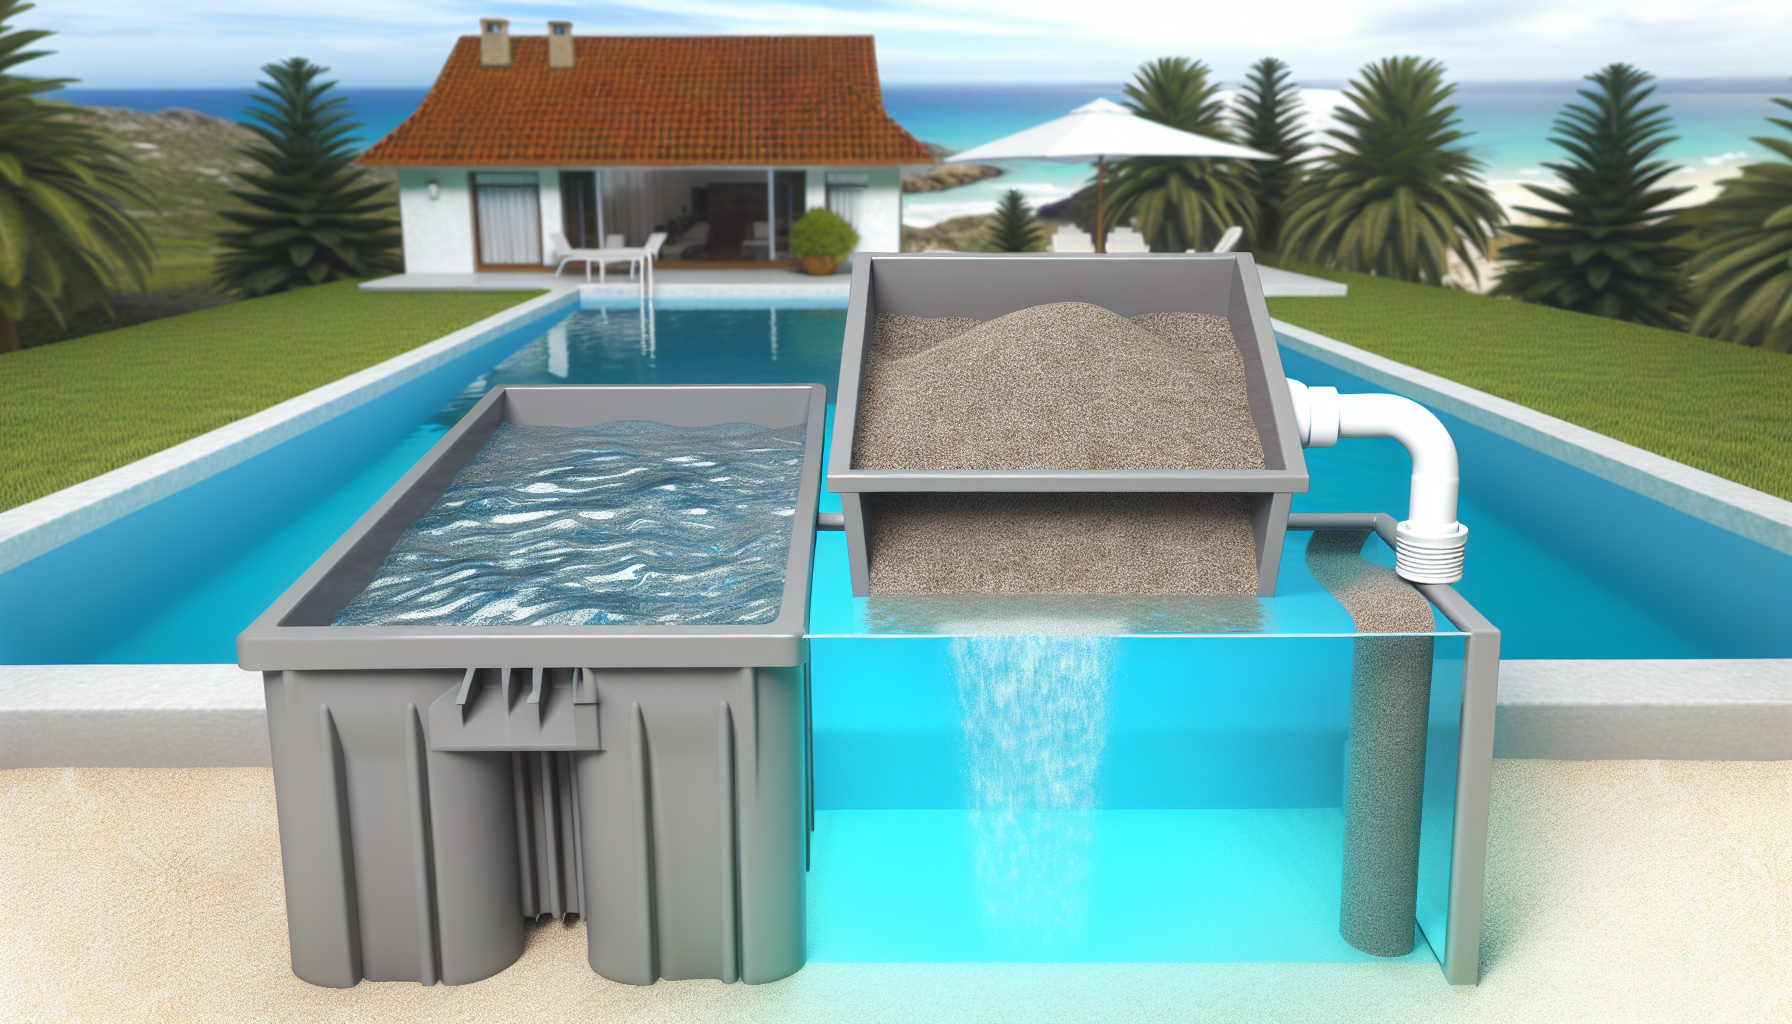 Schematische Darstellung eines Querschnitts durch ein swimming pool Filtrationssystem mit einem Blick auf die Umgebung.